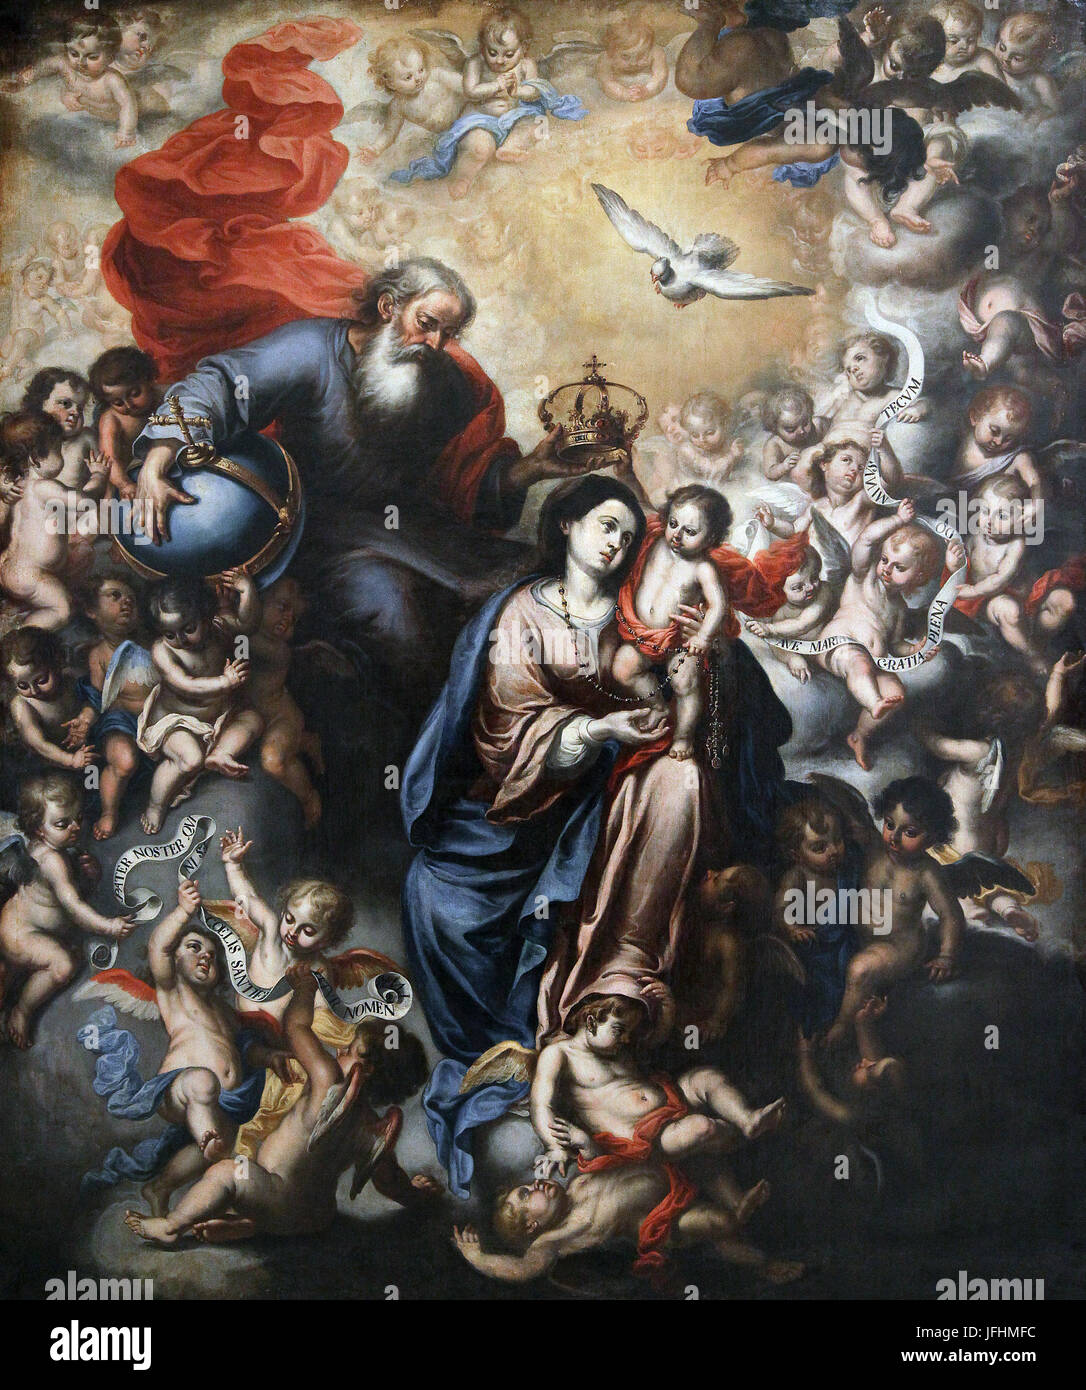 la coronacion de la virgen Coronation of the Virgin 1750 by Antonio del a Pozo Stock Photo